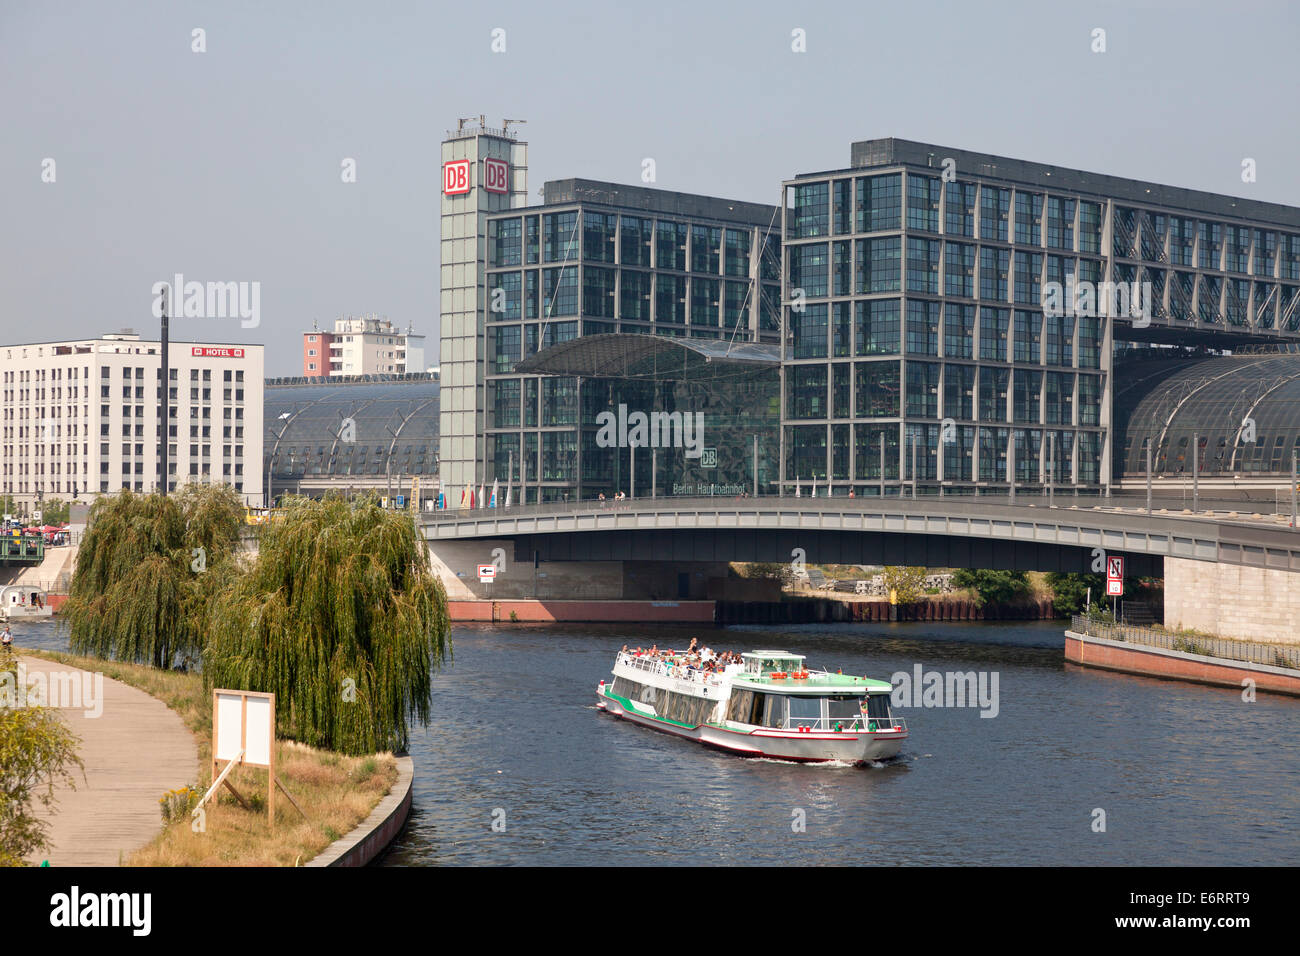 La nueva estación principal de tren Hauptbahnhof y excursión en barco por el río Spree, en Berlín, Alemania, Europa Foto de stock